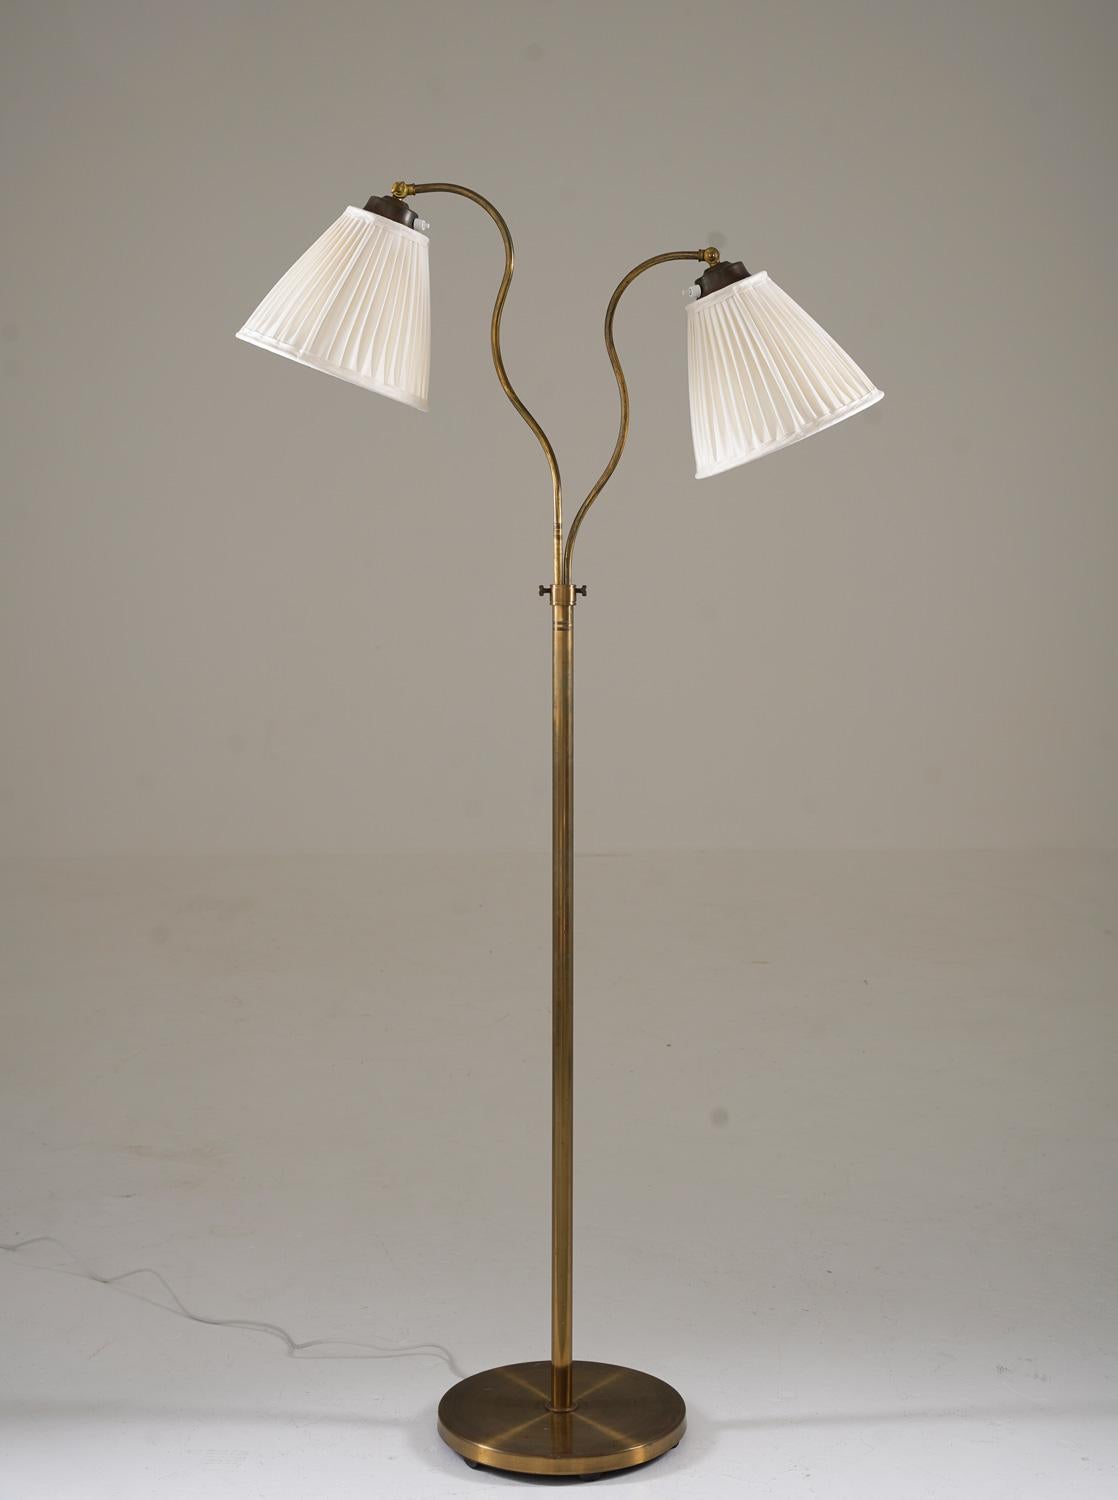 Il s'agit d'un joli lampadaire moderne suédois qui a été fabriqué en Suède dans les années 1940 par Corona.
La lampe se compose d'une base en fer recouverte de laiton et d'une tige en laiton, qui supporte deux bras pivotants qui soutiennent les